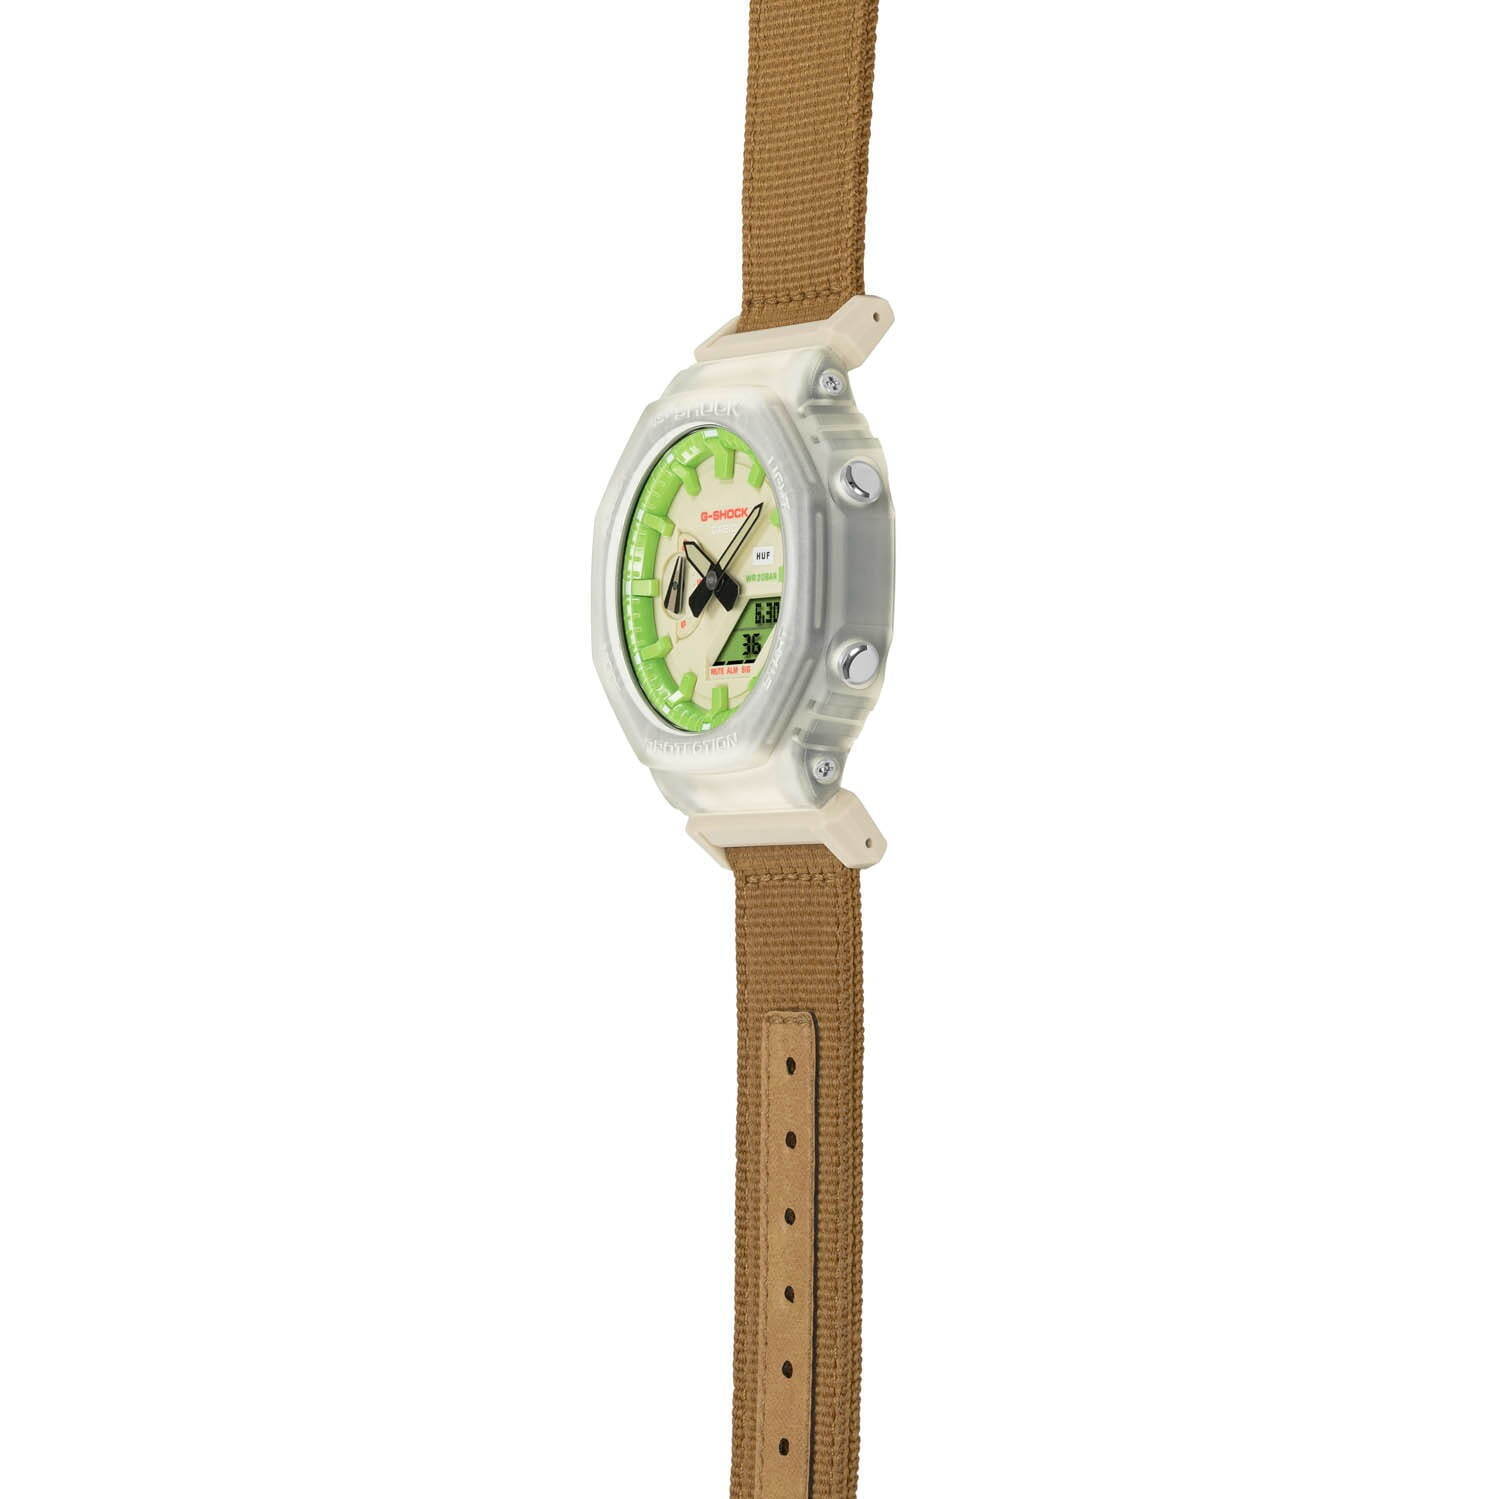 ハフ×G-SHOCKのコラボ腕時計、グリーンを配した文字盤にスケルトン 